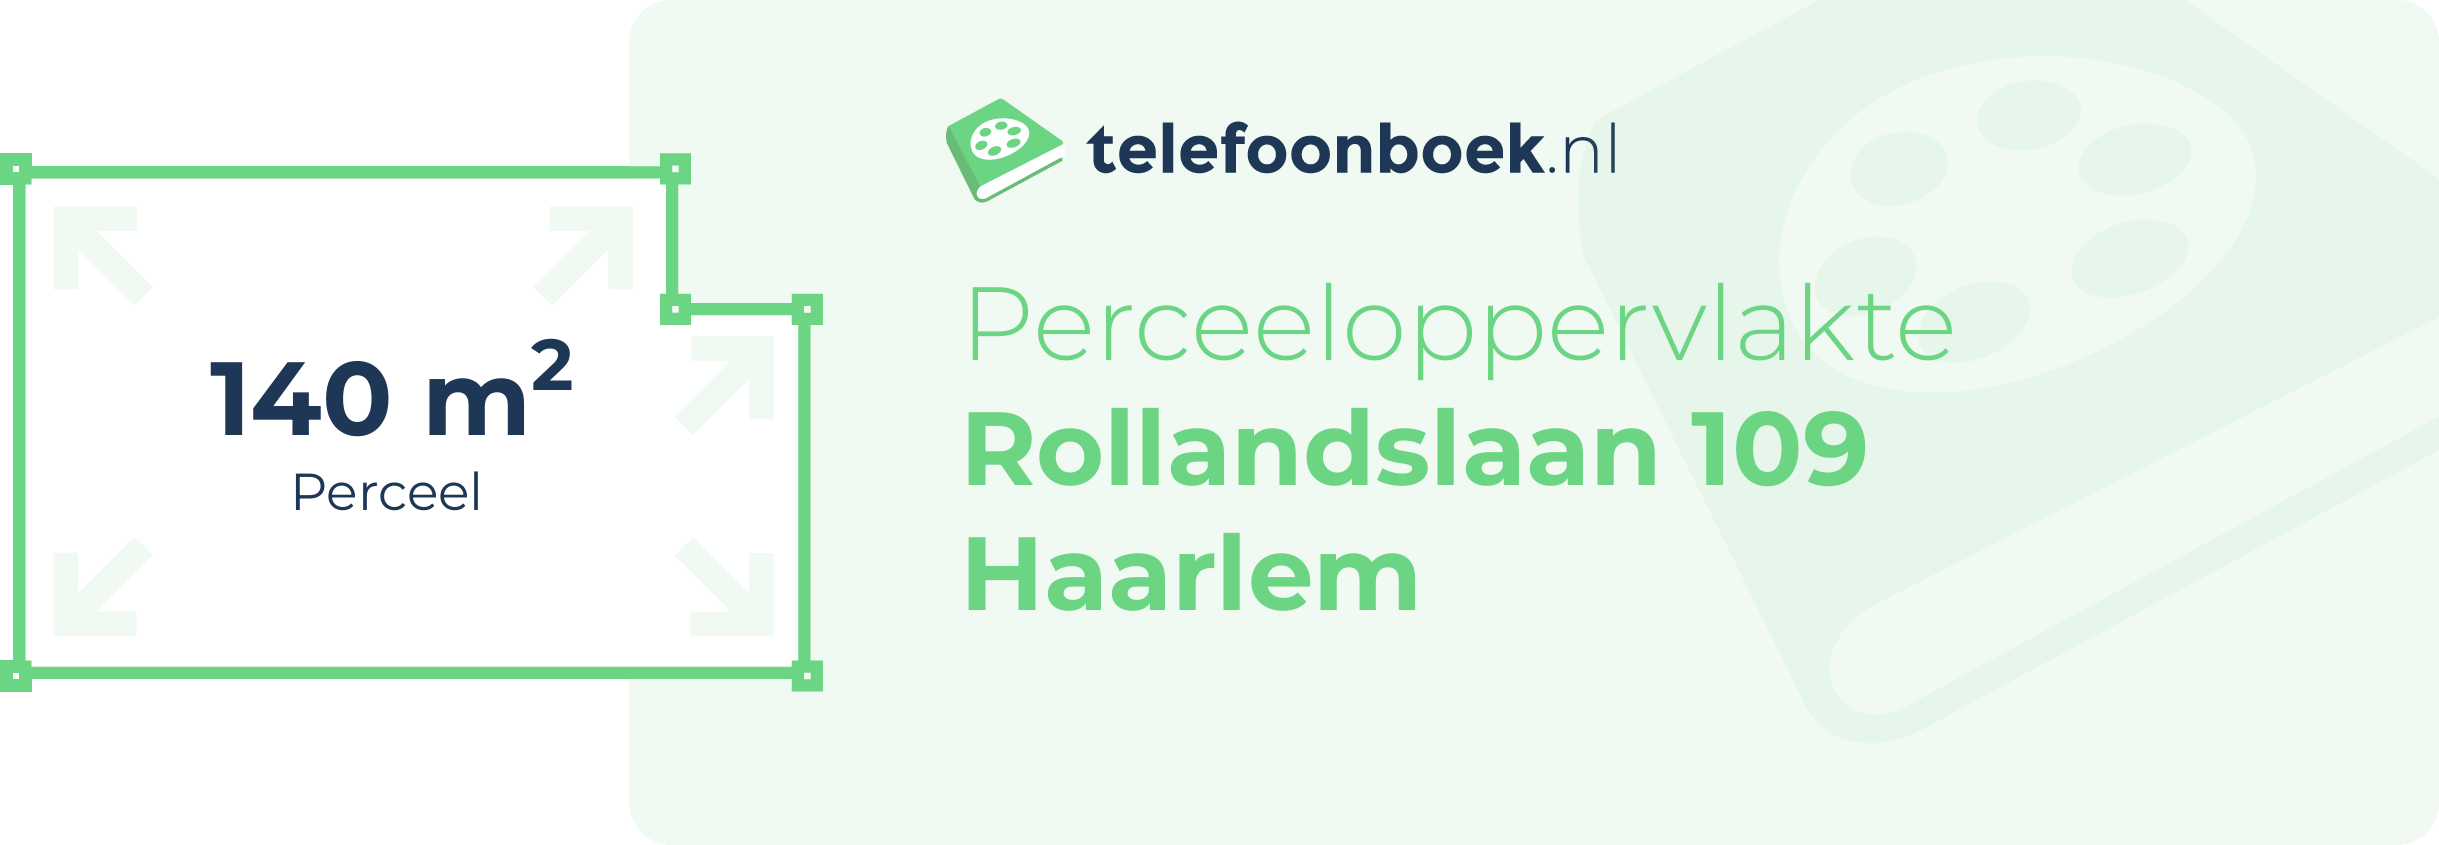 Perceeloppervlakte Rollandslaan 109 Haarlem